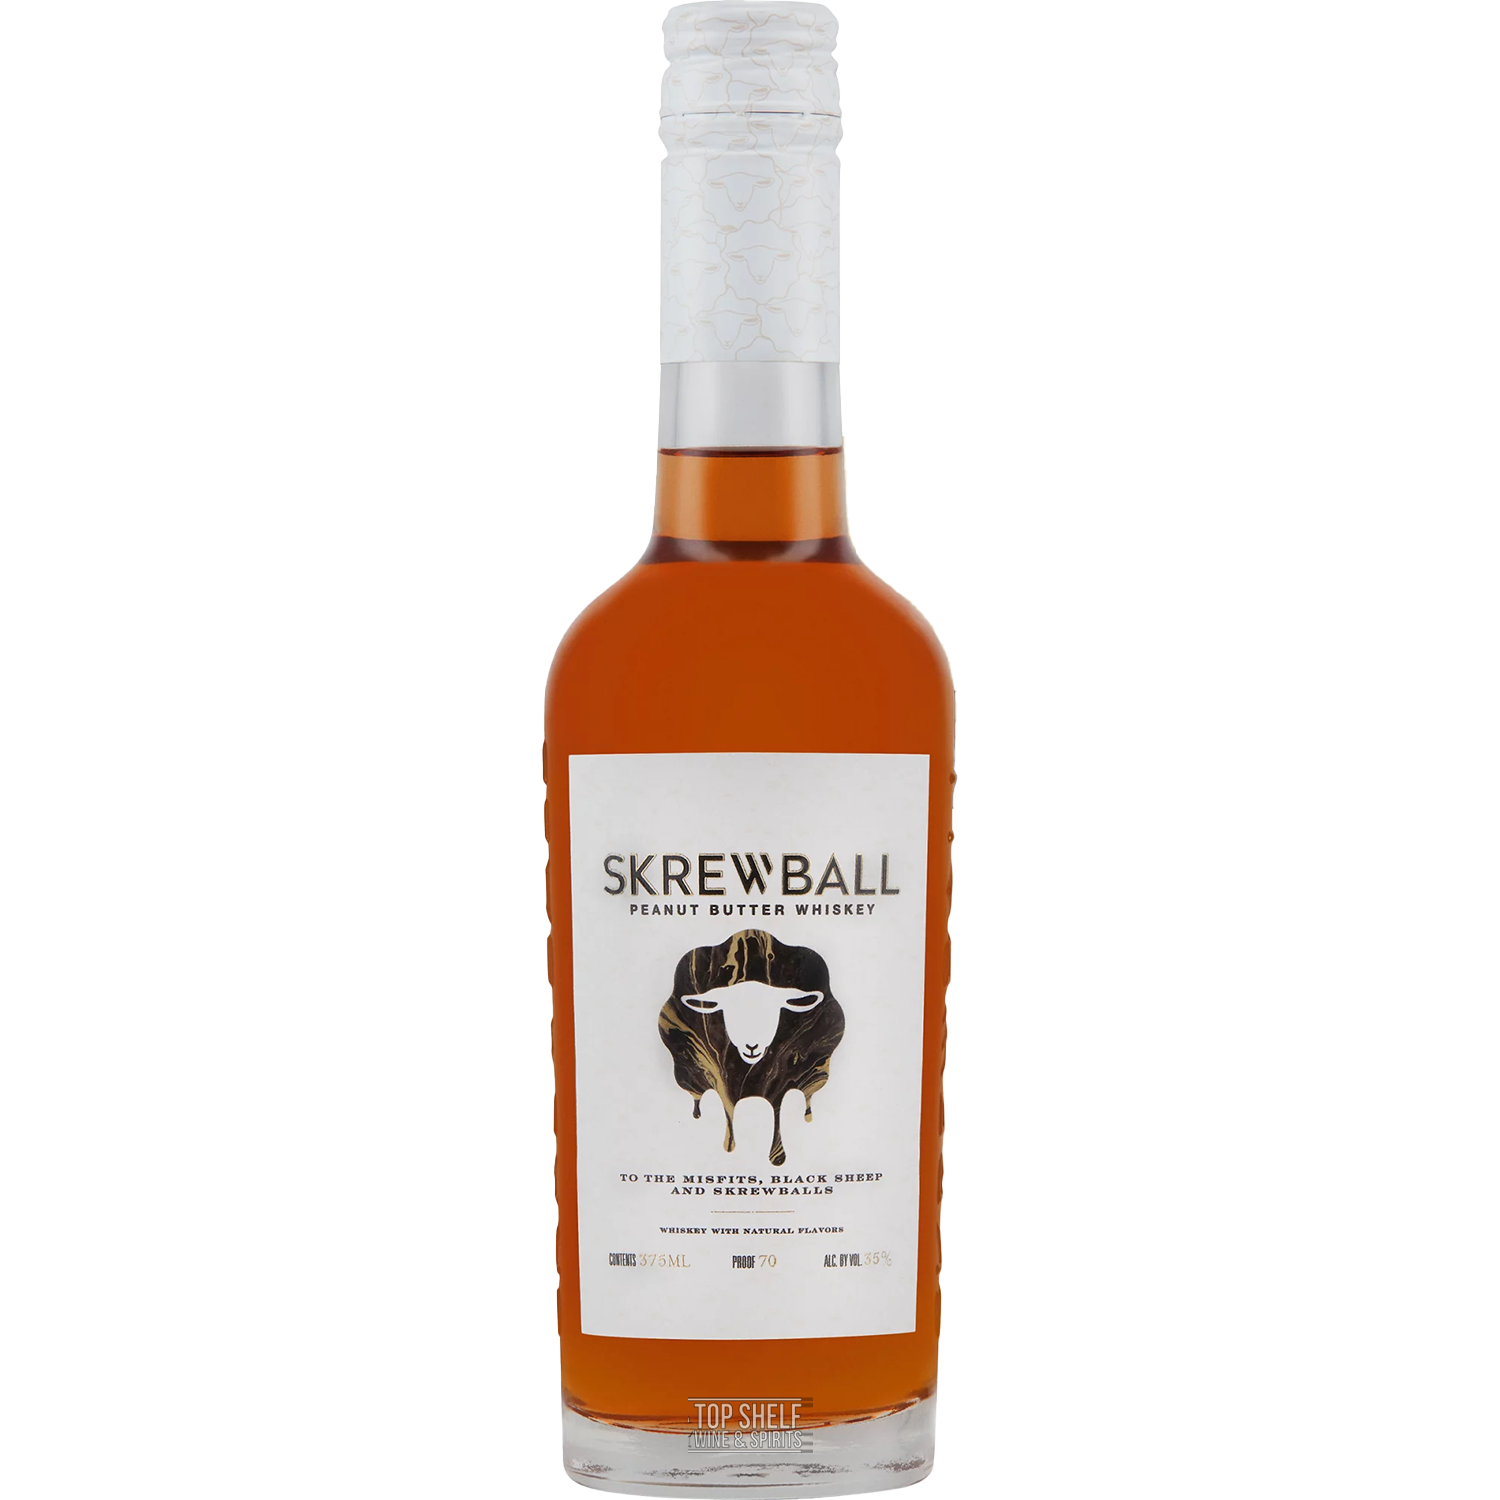 Skrewball Peanut Butter Whisky 375ml